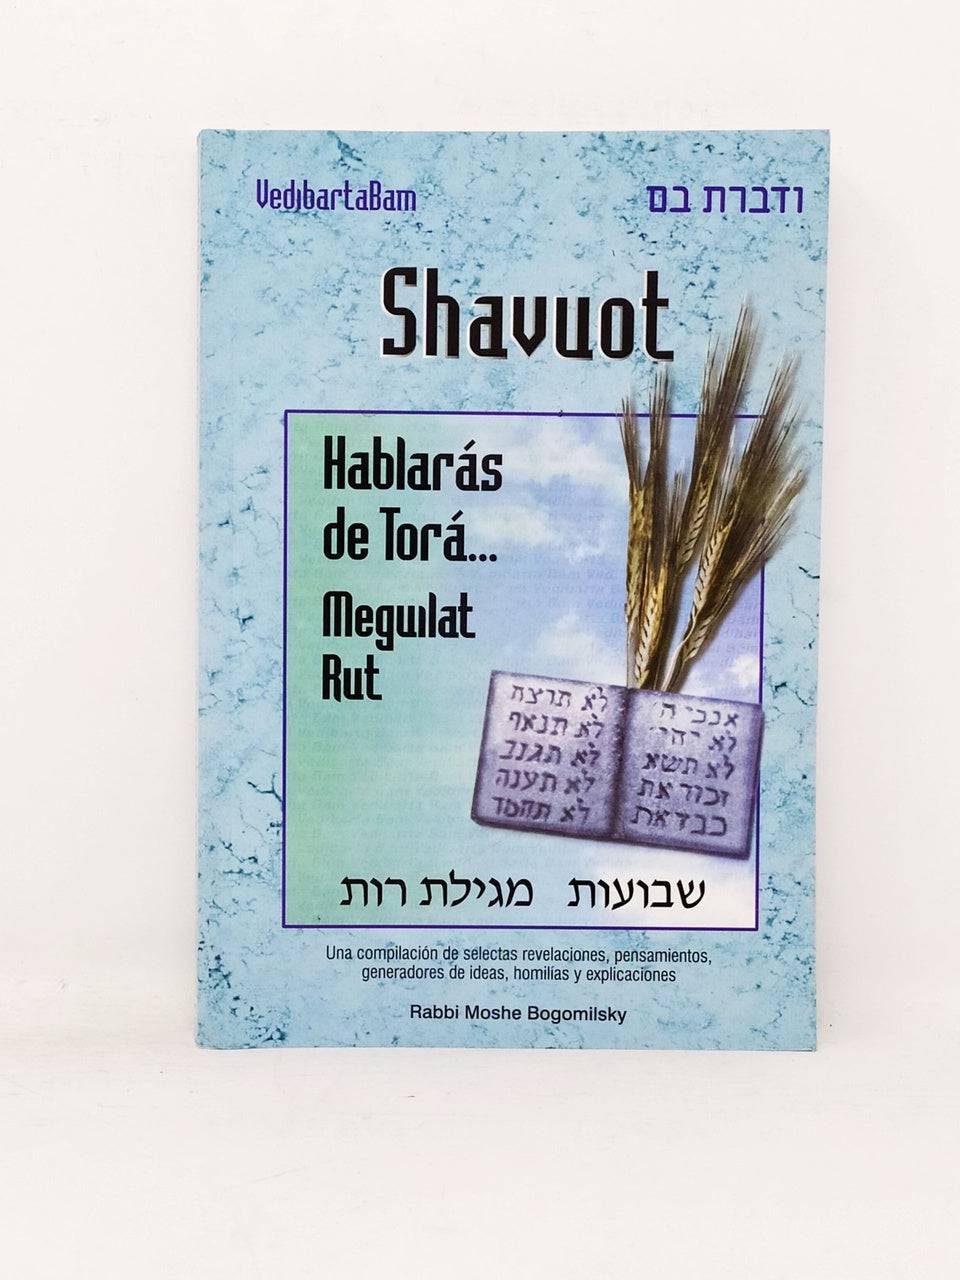 Hablaras de Torá Shavuot Meguilat Rut - Libreria Jerusalem Centro